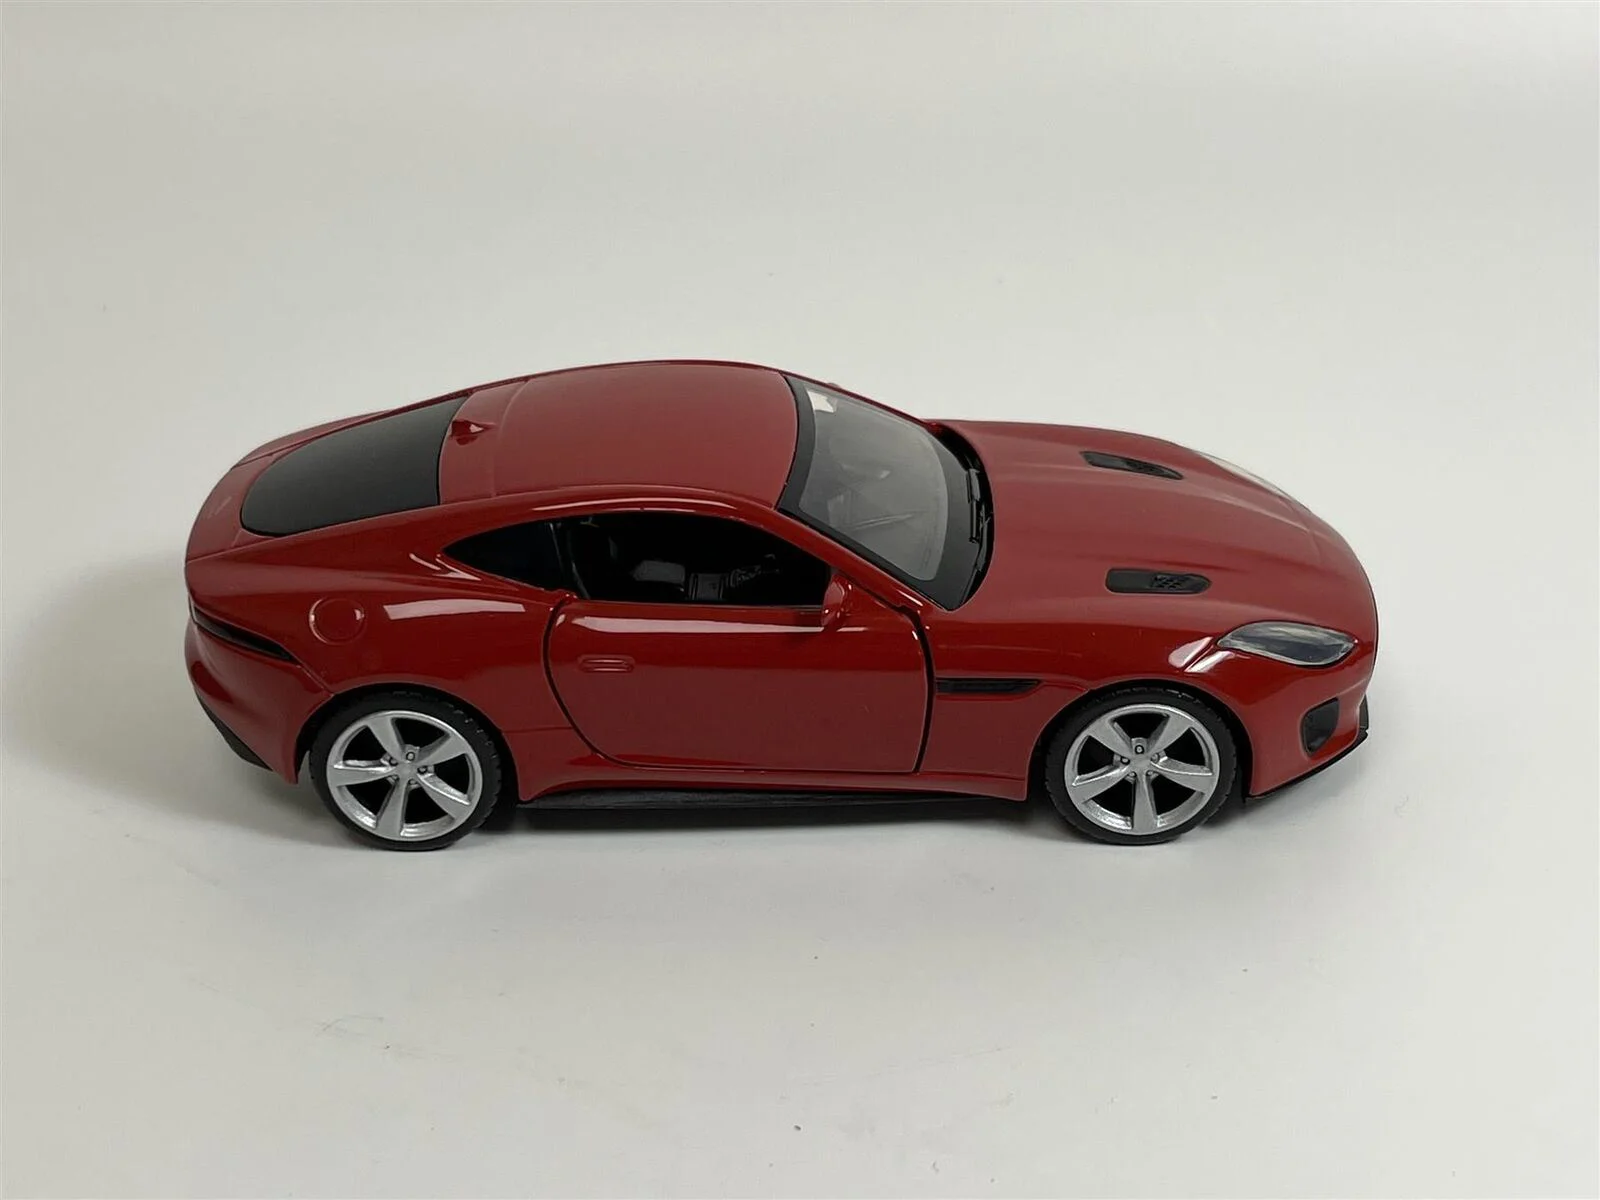 Модель автомобиля Jaguar F-Type, 1:36, Красный Механизм обратного хода, синхрон